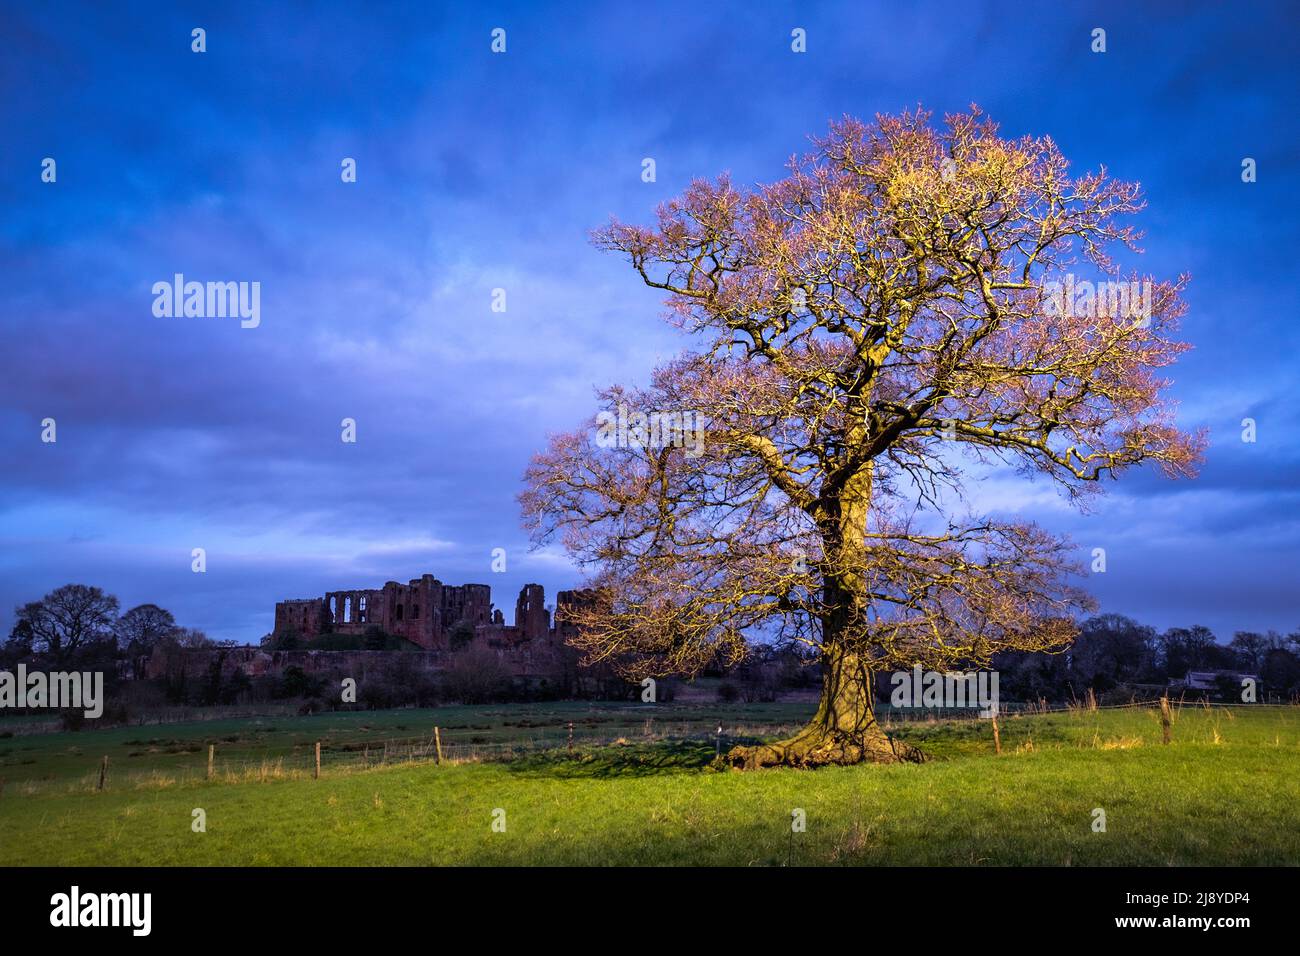 An Oak tree in the fields around Kenilworth Castle in Warwickshire, UK Stock Photo